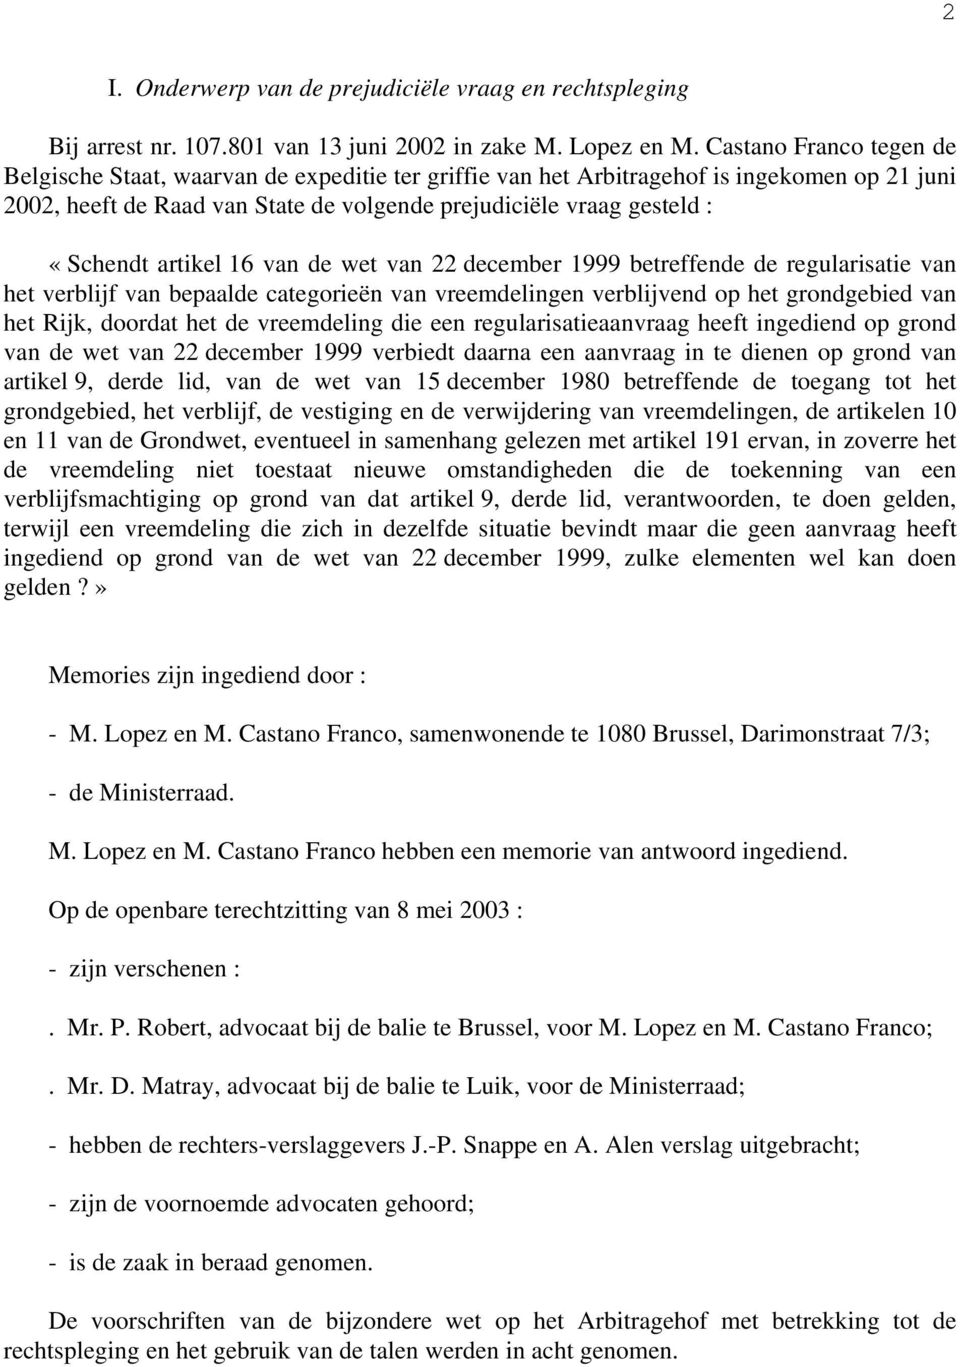 artikel 16 van de wet van 22 december 1999 betreffende de regularisatie van het verblijf van bepaalde categorieën van vreemdelingen verblijvend op het grondgebied van het Rijk, doordat het de